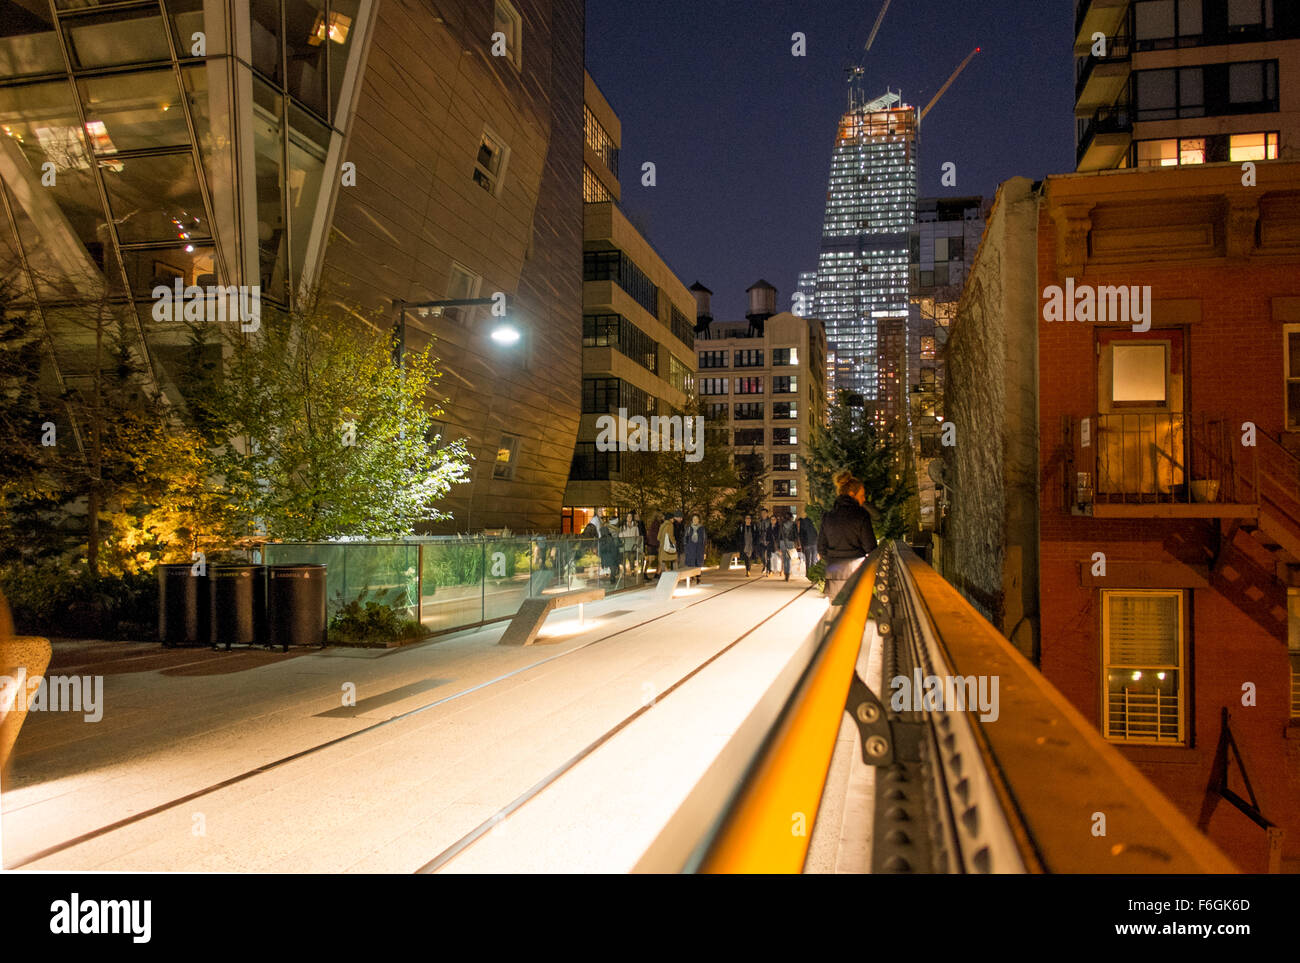 La linea alta Park di New York City, Stati Uniti d'America. Un progetto di rigenerazione per girare un ex ferrovia sopraelevata in un parco. Foto Stock